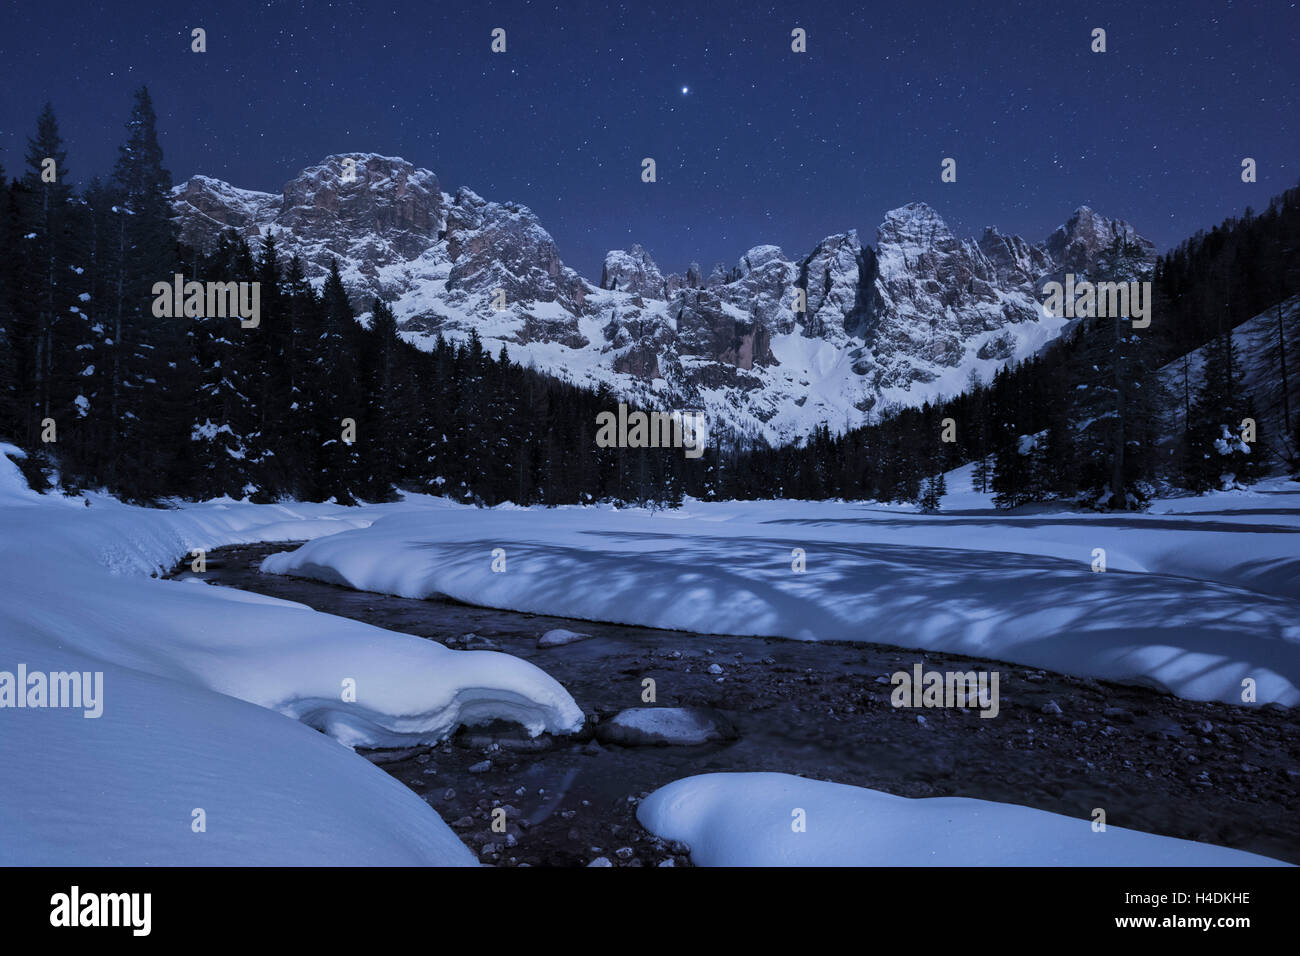 Grupo de pala en la luz de la luna, Dolomitas, Italia Foto de stock